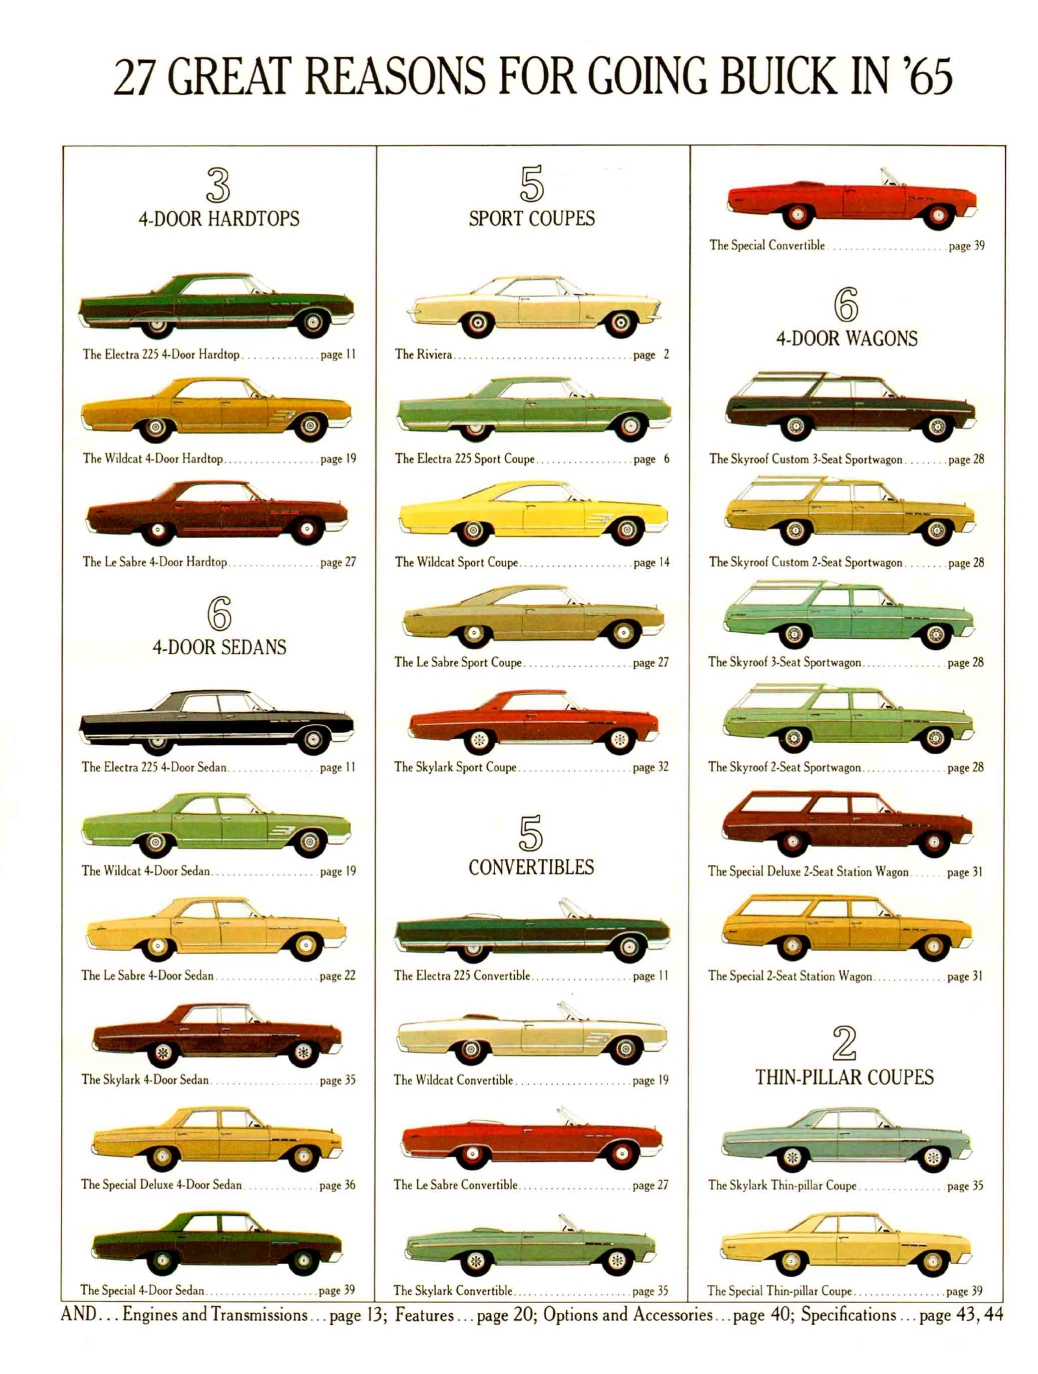 1965 Buick Full Line Prestige-01